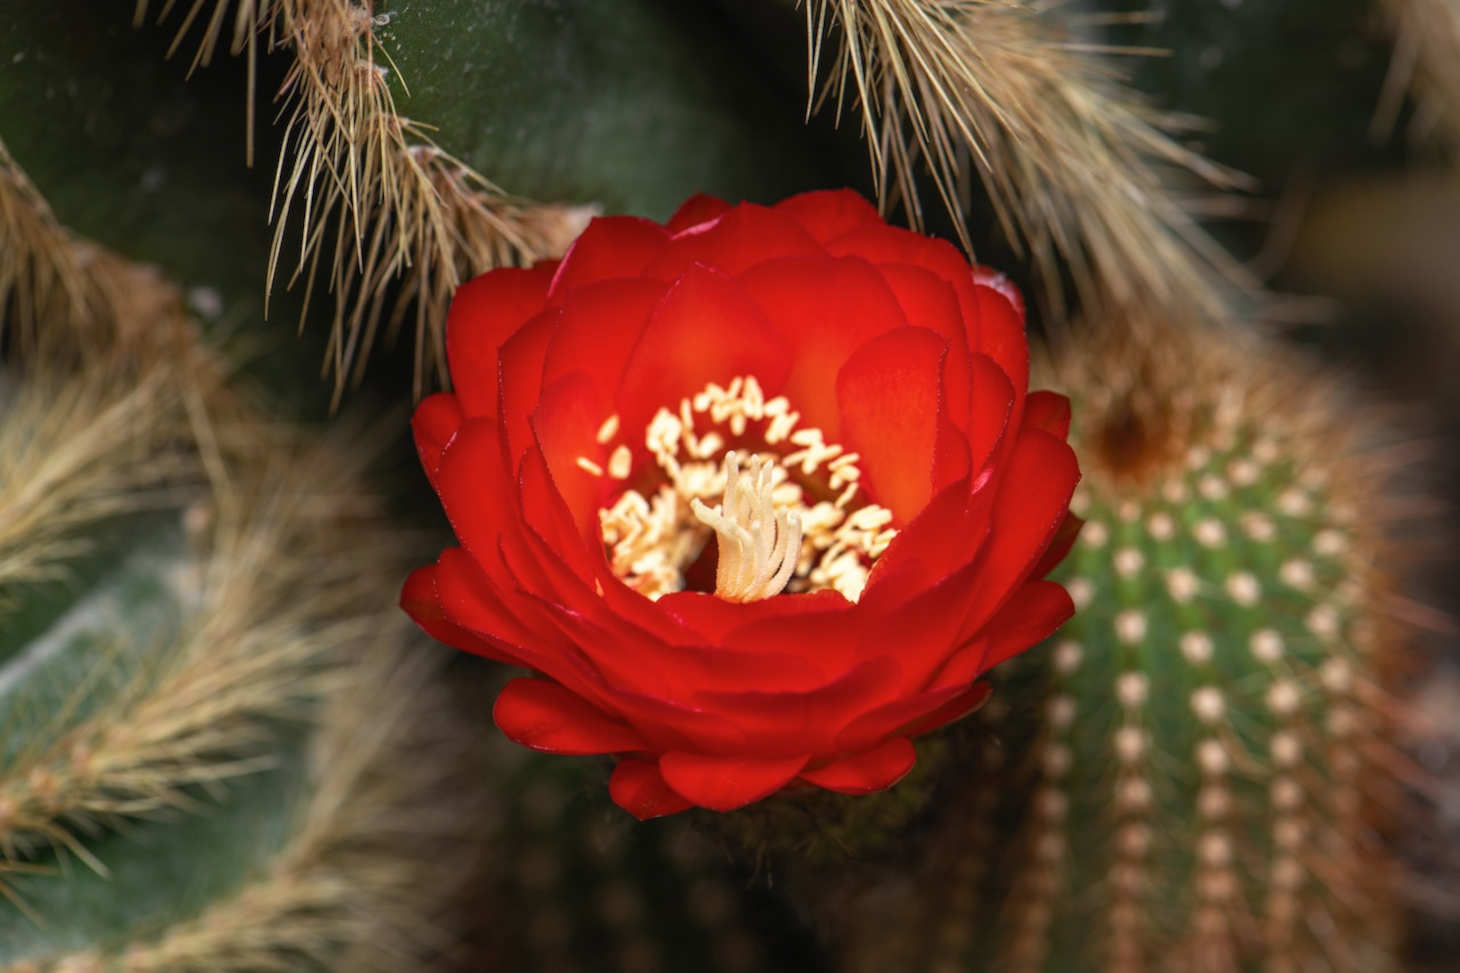 zoomed in hedgehog cactus flower